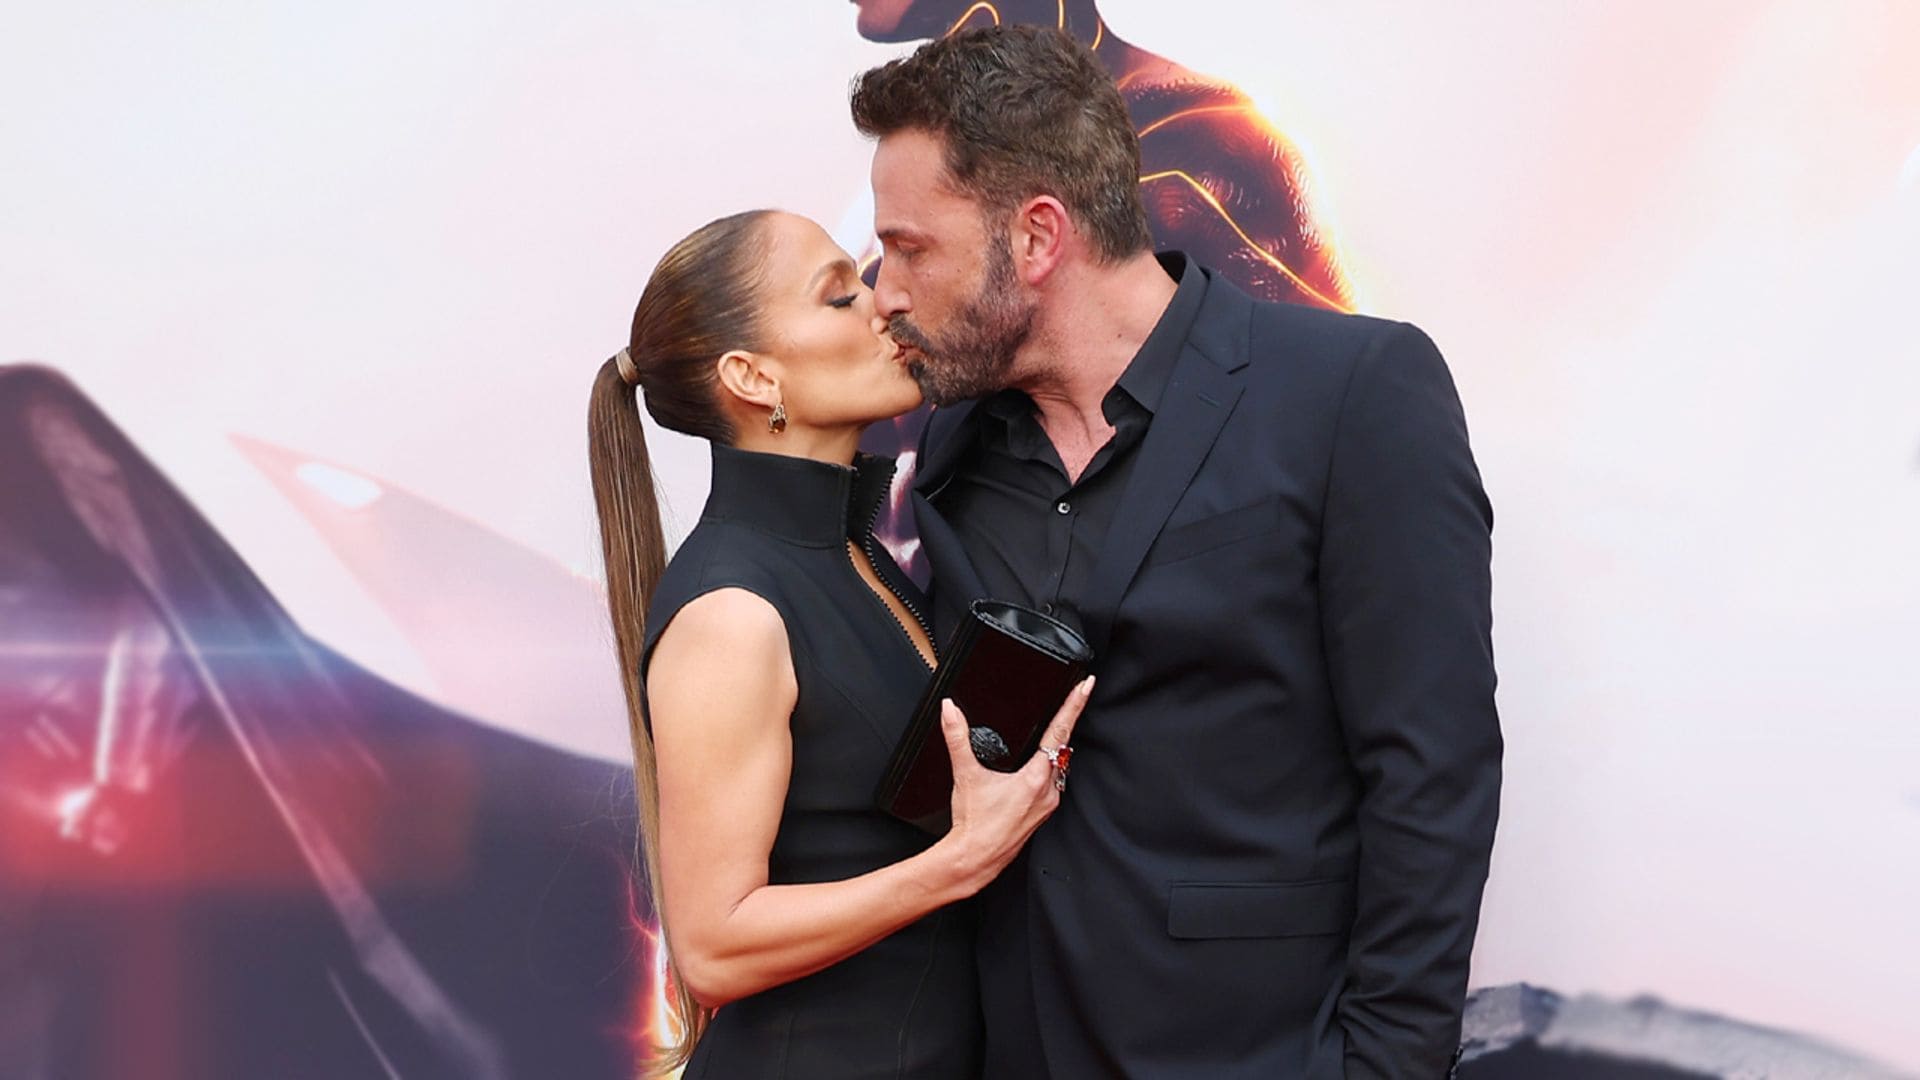 De los besos a vivir separados: así ha cambiado la relación de Jennifer Lopez y Ben Affleck en un año